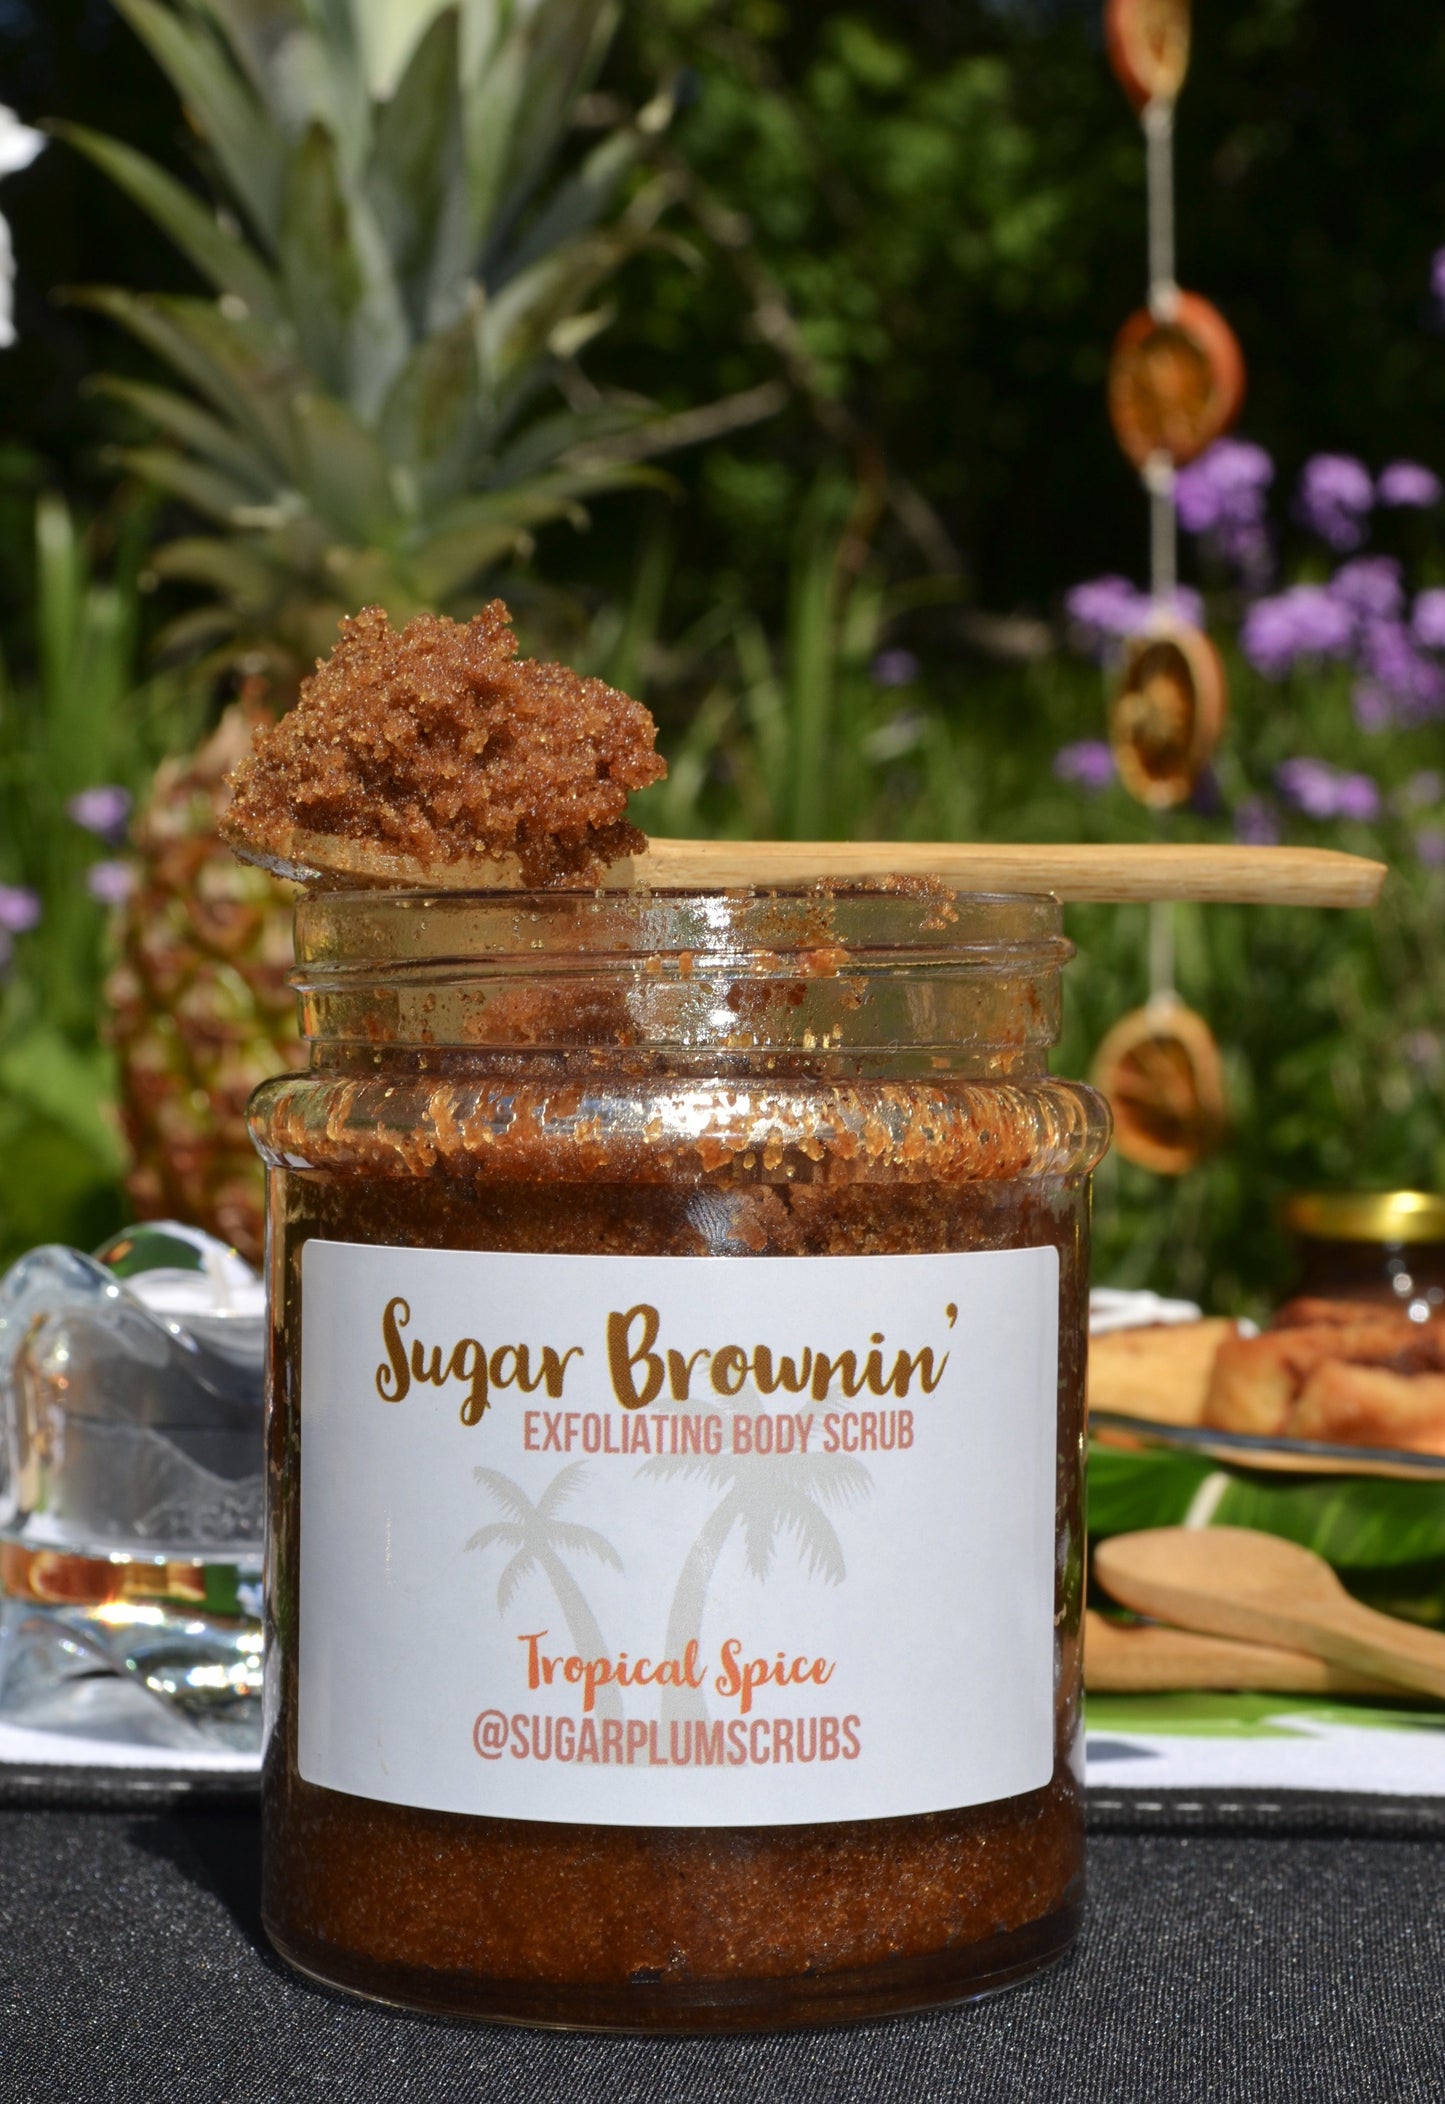 Sugar Brownin’ - Tropical Spice Exfoliating Body Scrub